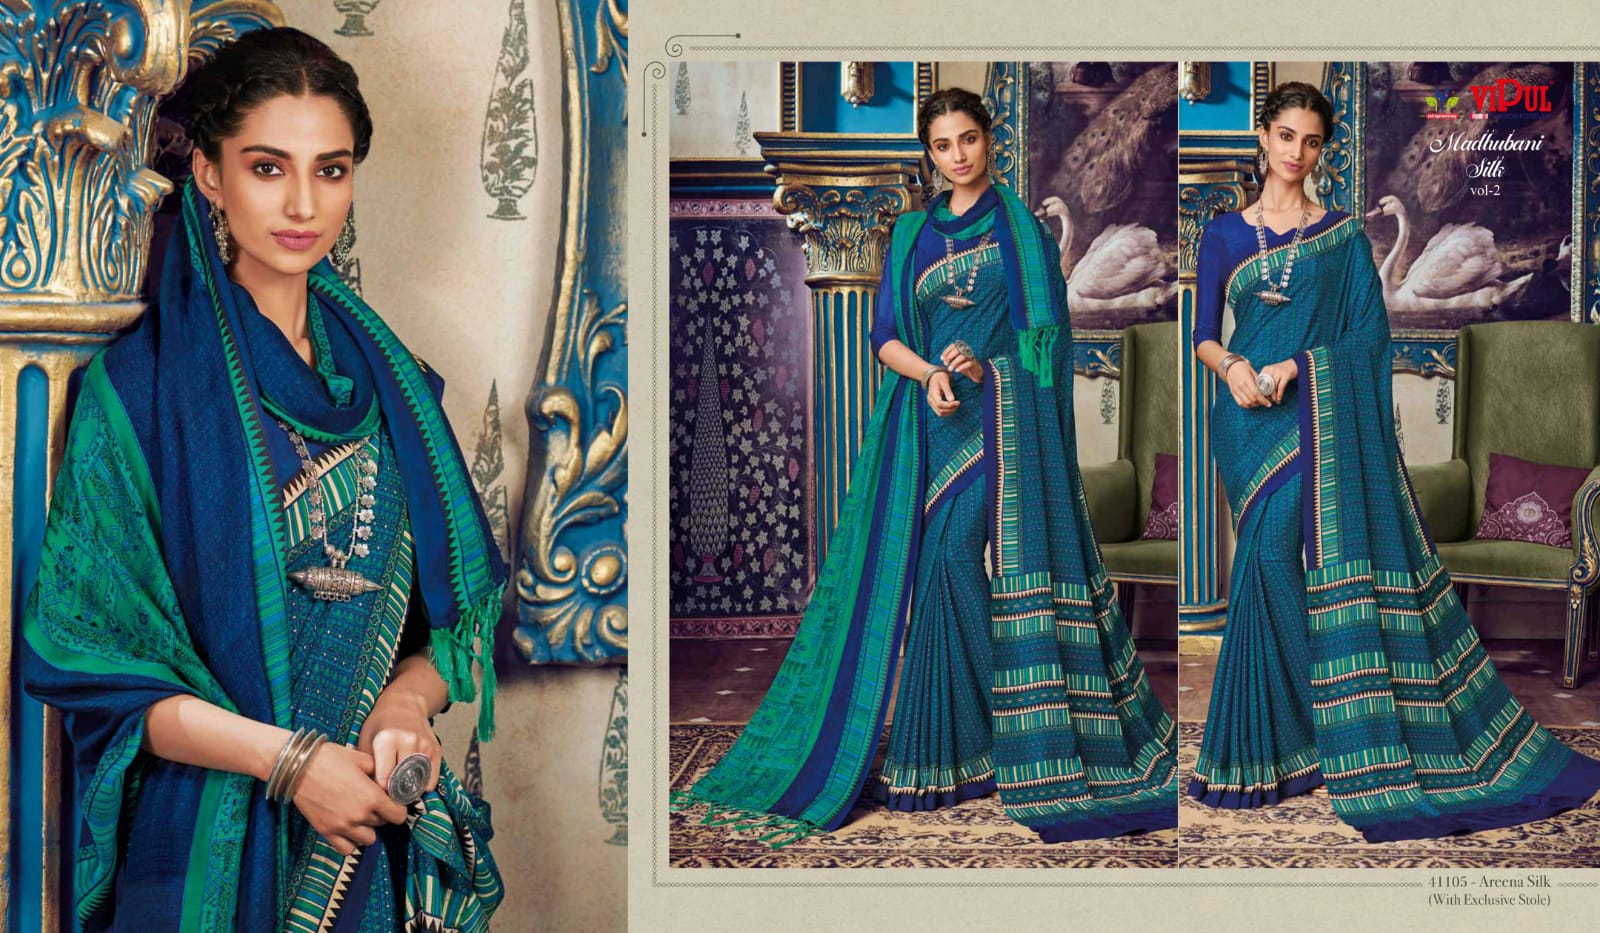 Vipul Madhubani Silk Vol 2 New Print Design Areena Silk Saree Catlog ...